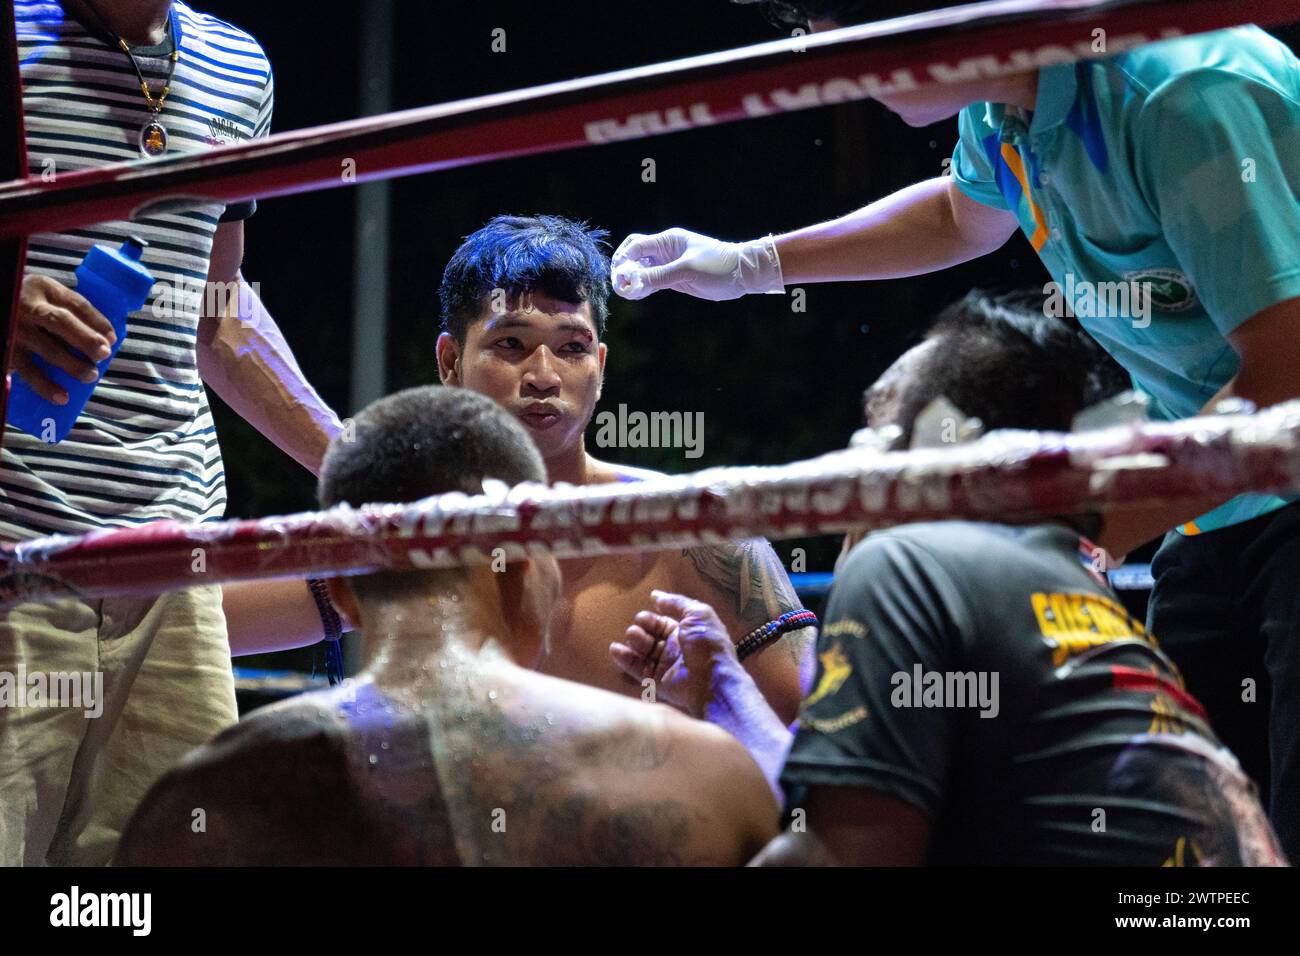 Le boxeur vainqueur Frame Payak (C) est vu parler à l'organisateur alors qu'il reçoit un traitement, pendant les combats de Muay Thai, sur l'île de Koh Chang, en Thaïlande. Banque D'Images